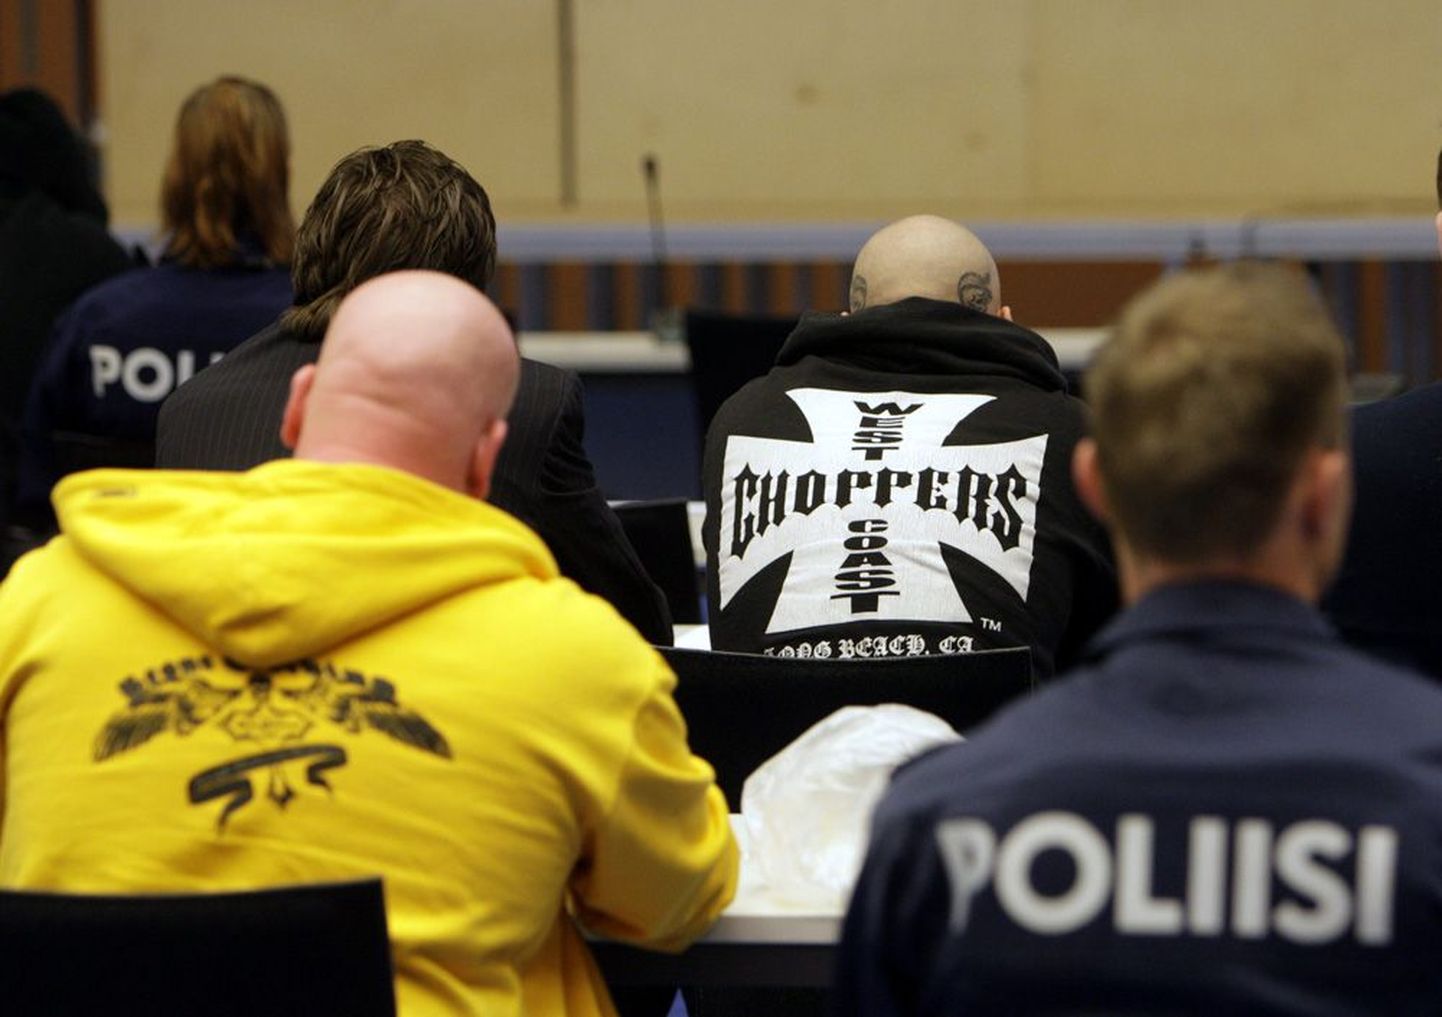 Cannonballi motoklubiga soetud isikud on Soomes kohtu all olnud ka varasemalt.